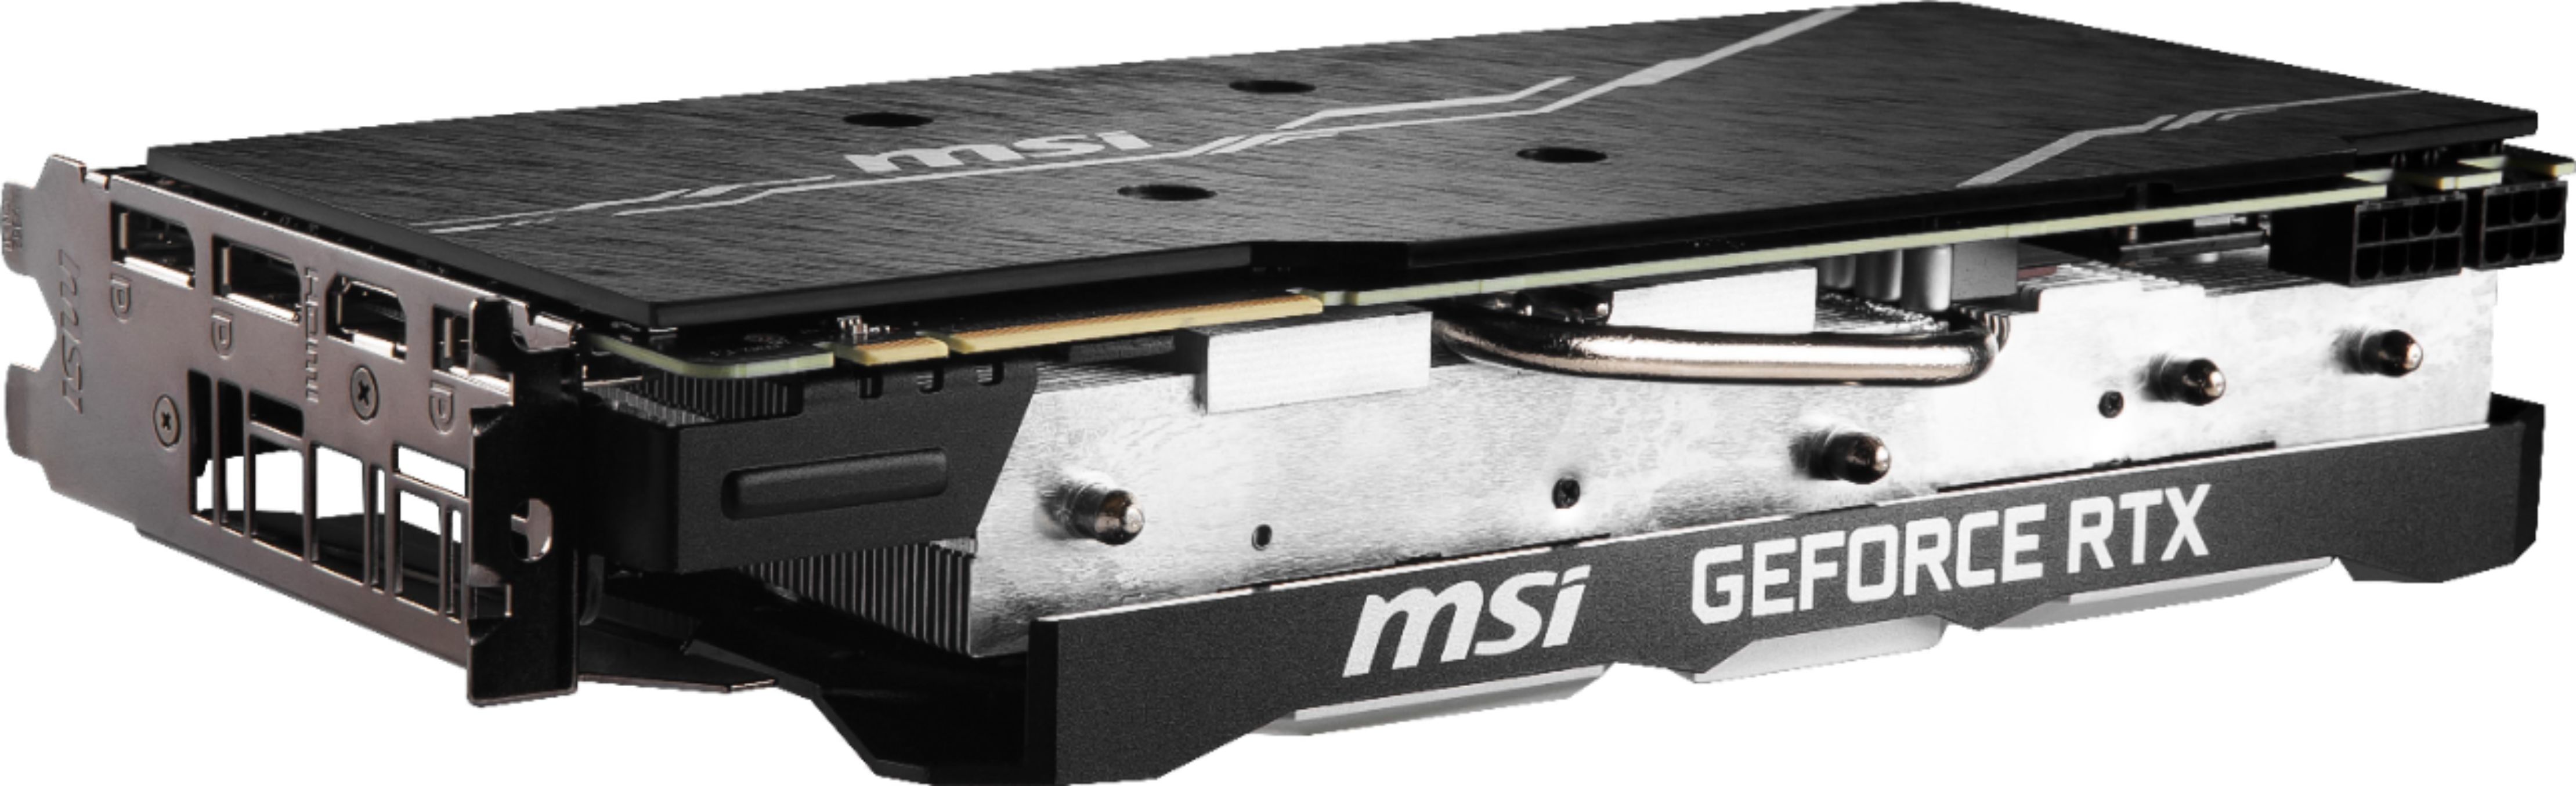 Best Buy: MSI SUPER VENTUS OC NVIDIA GeForce RTX 2080 Super 8GB